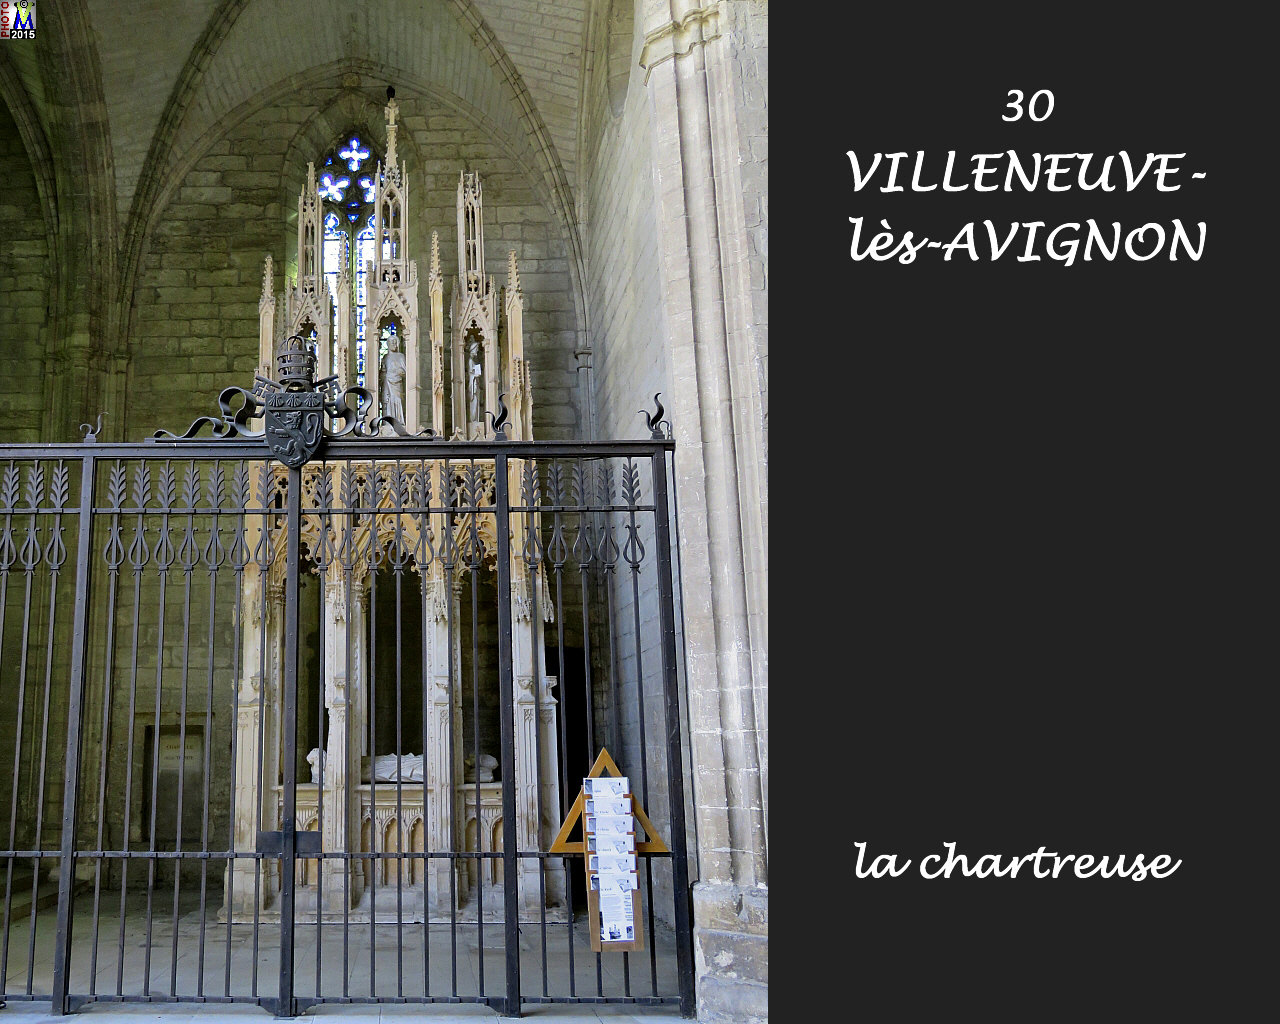 30VILLENEUVE-AVIGNON_chartreuse_134.jpg